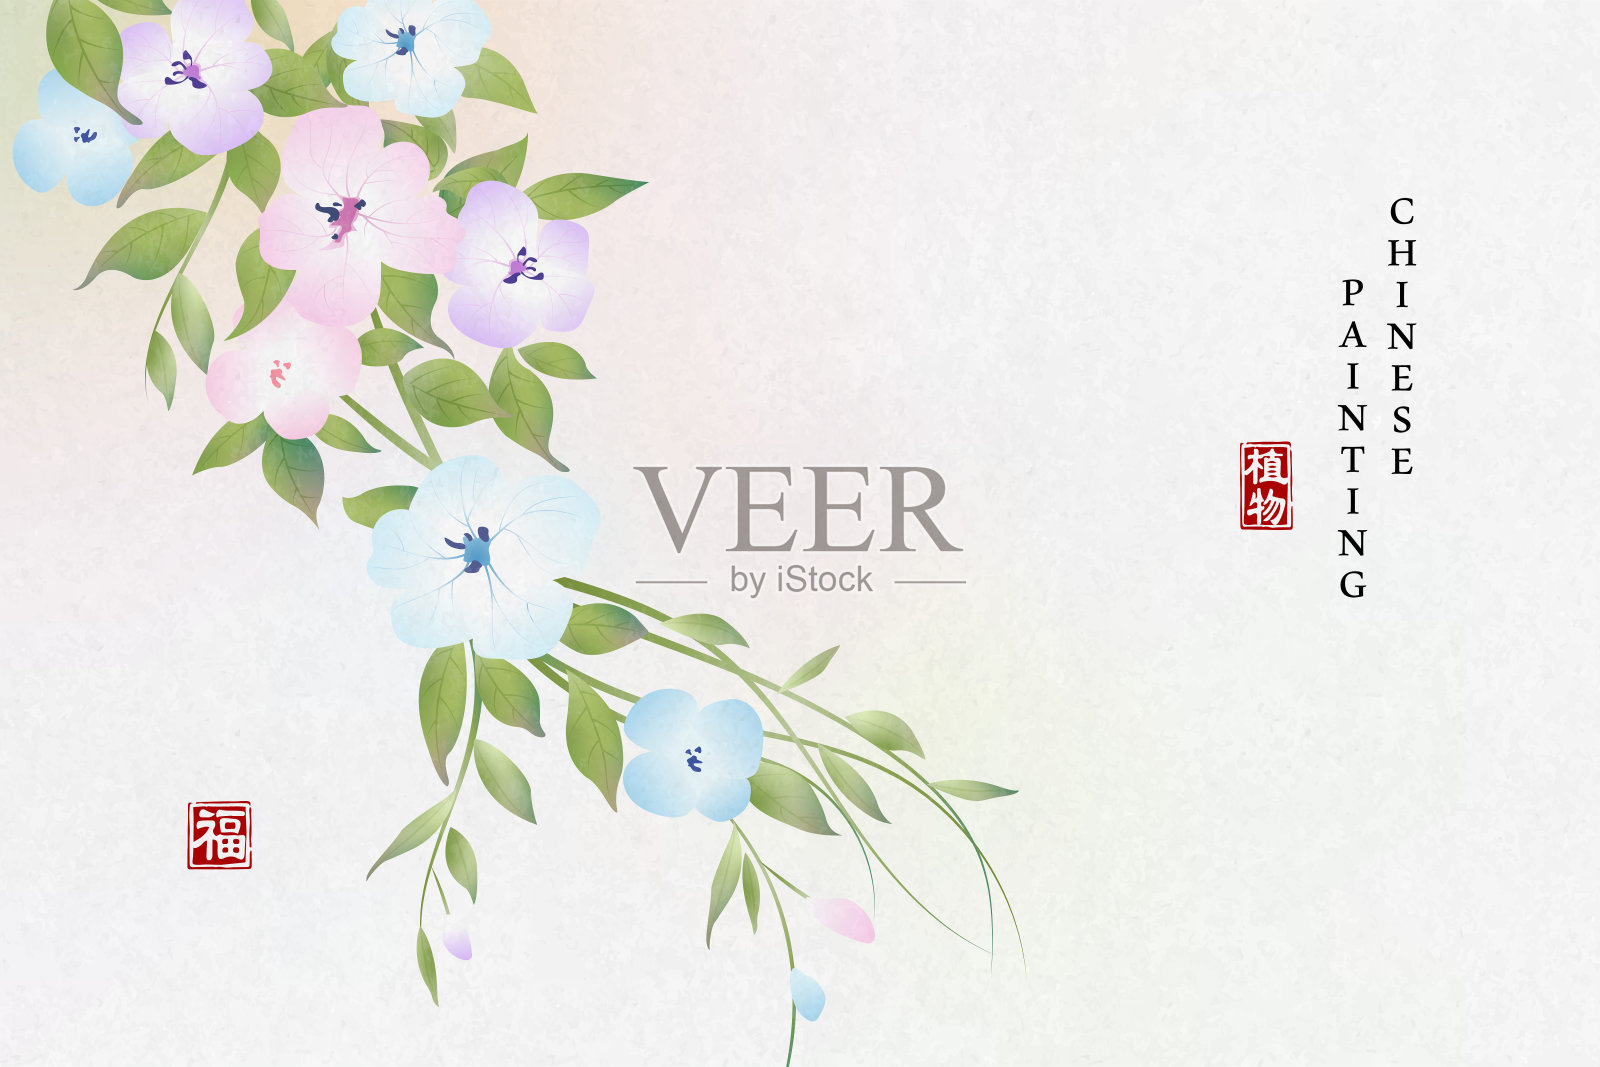 中国水墨画艺术背景植物优雅的花藤。中文翻译:植物和祝福。插画图片素材